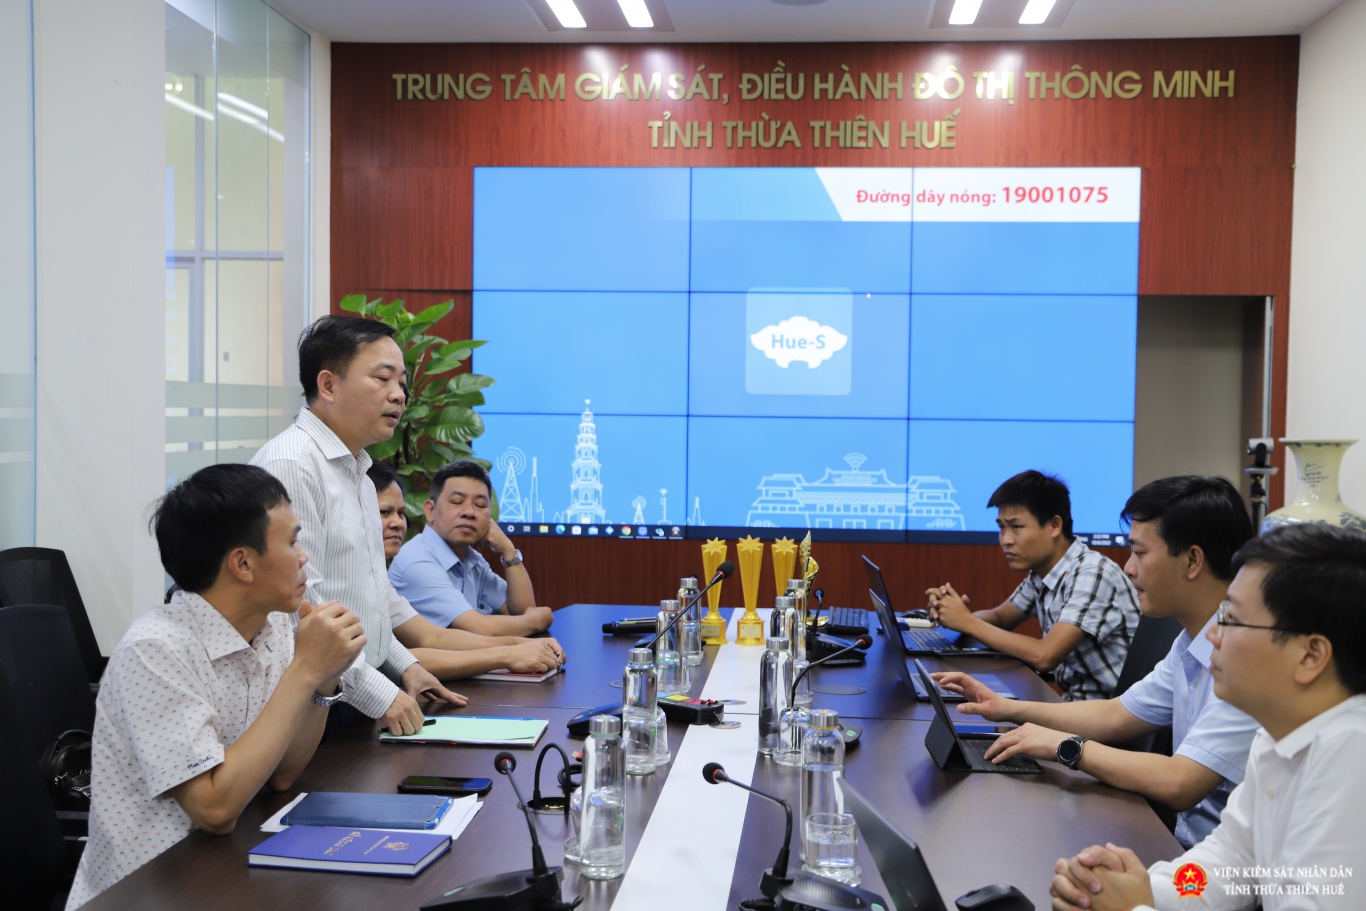 Đồng chí Nguyễn Như Hùng - Cục trưởng Cục 2 làm việc tại Sở Thông tin và truyền thông tỉnh Thừa Thiên Huế